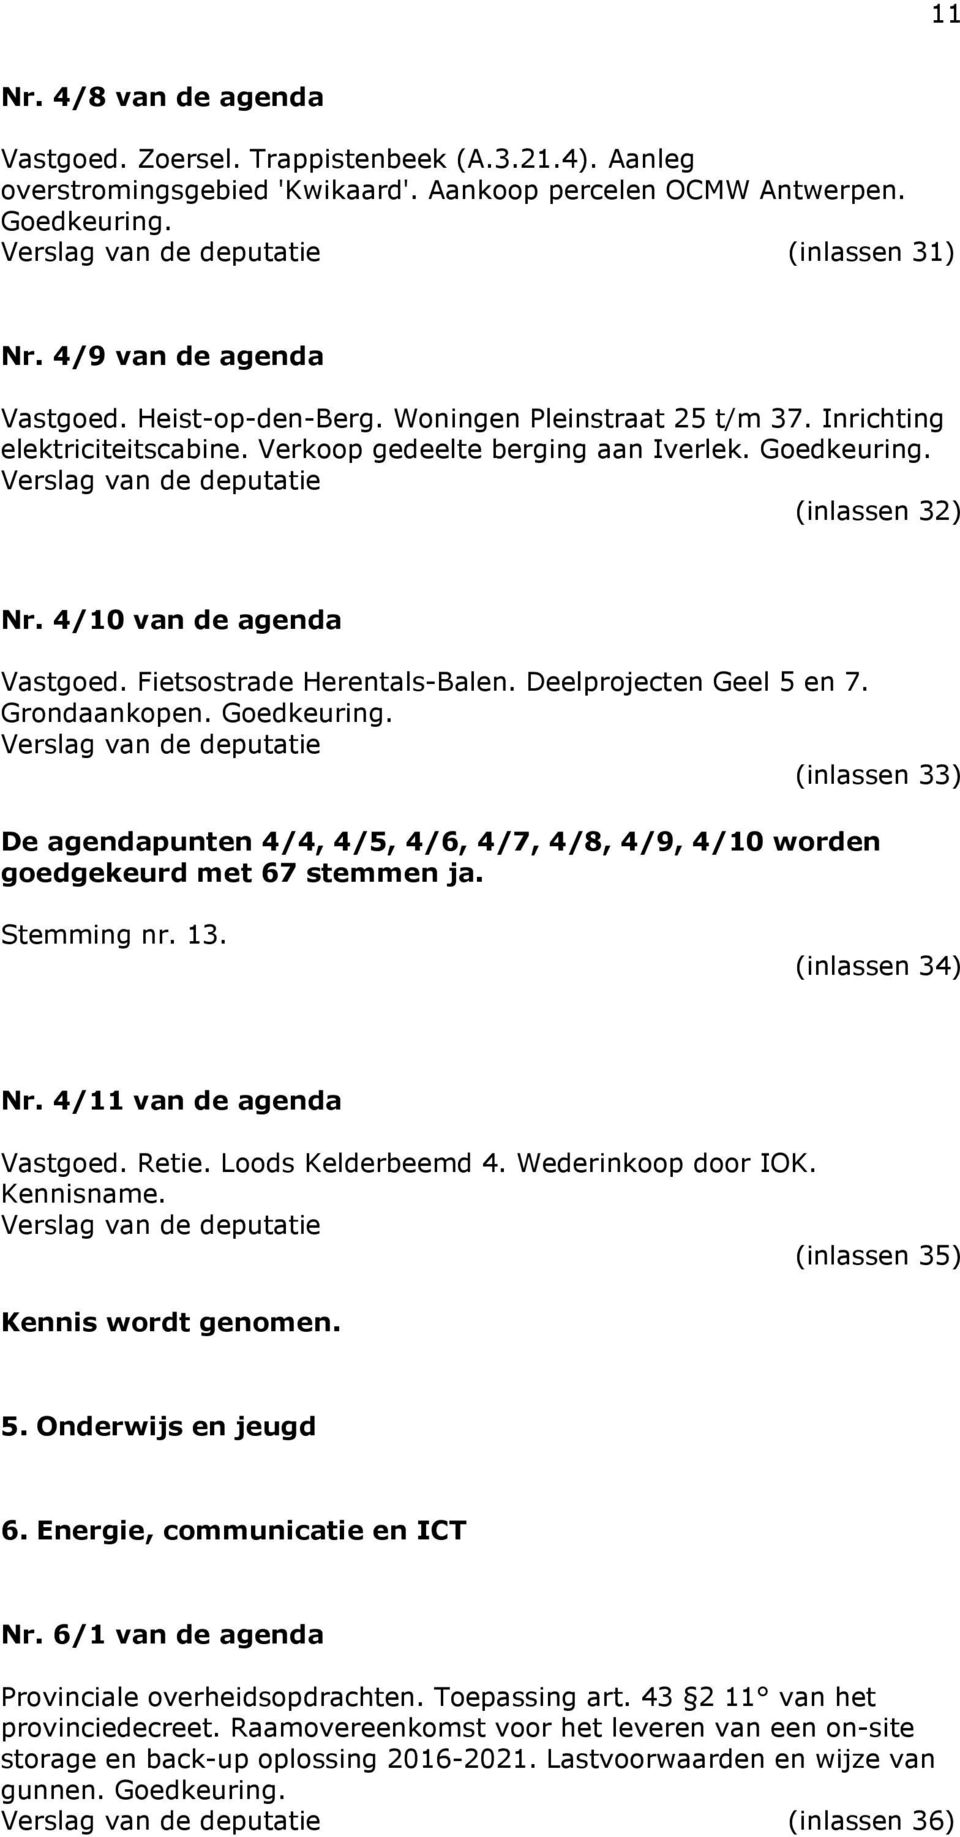 4/10 van de agenda Vastgoed. Fietsostrade Herentals-Balen. Deelprojecten Geel 5 en 7. Grondaankopen. Goedkeuring.